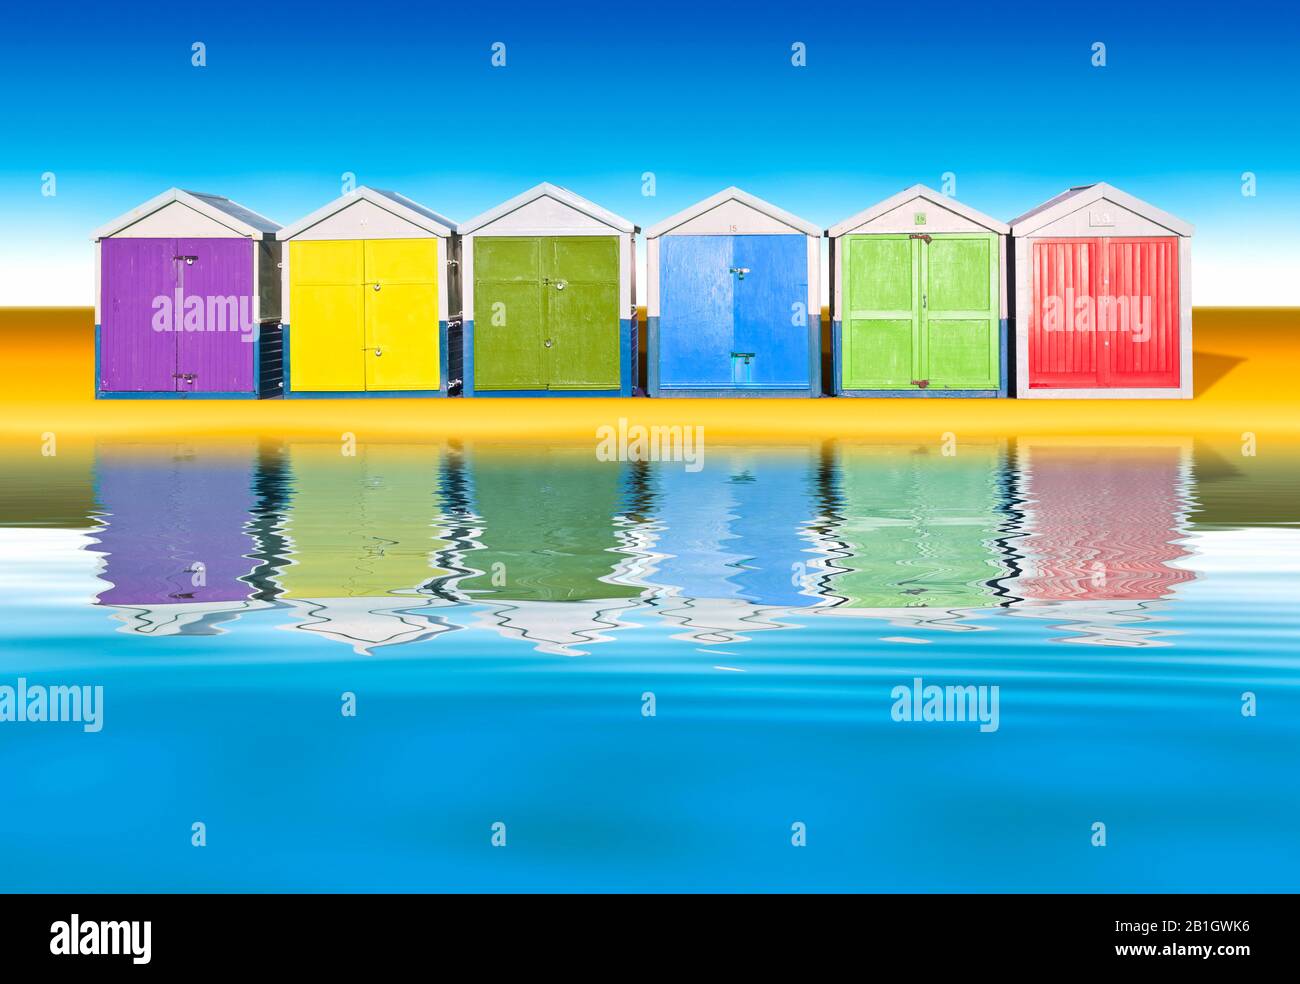 Gráfico informático 3D, coloridas cabañas de playa contra el cielo azul sin nubes, Europa, Alemania Foto de stock